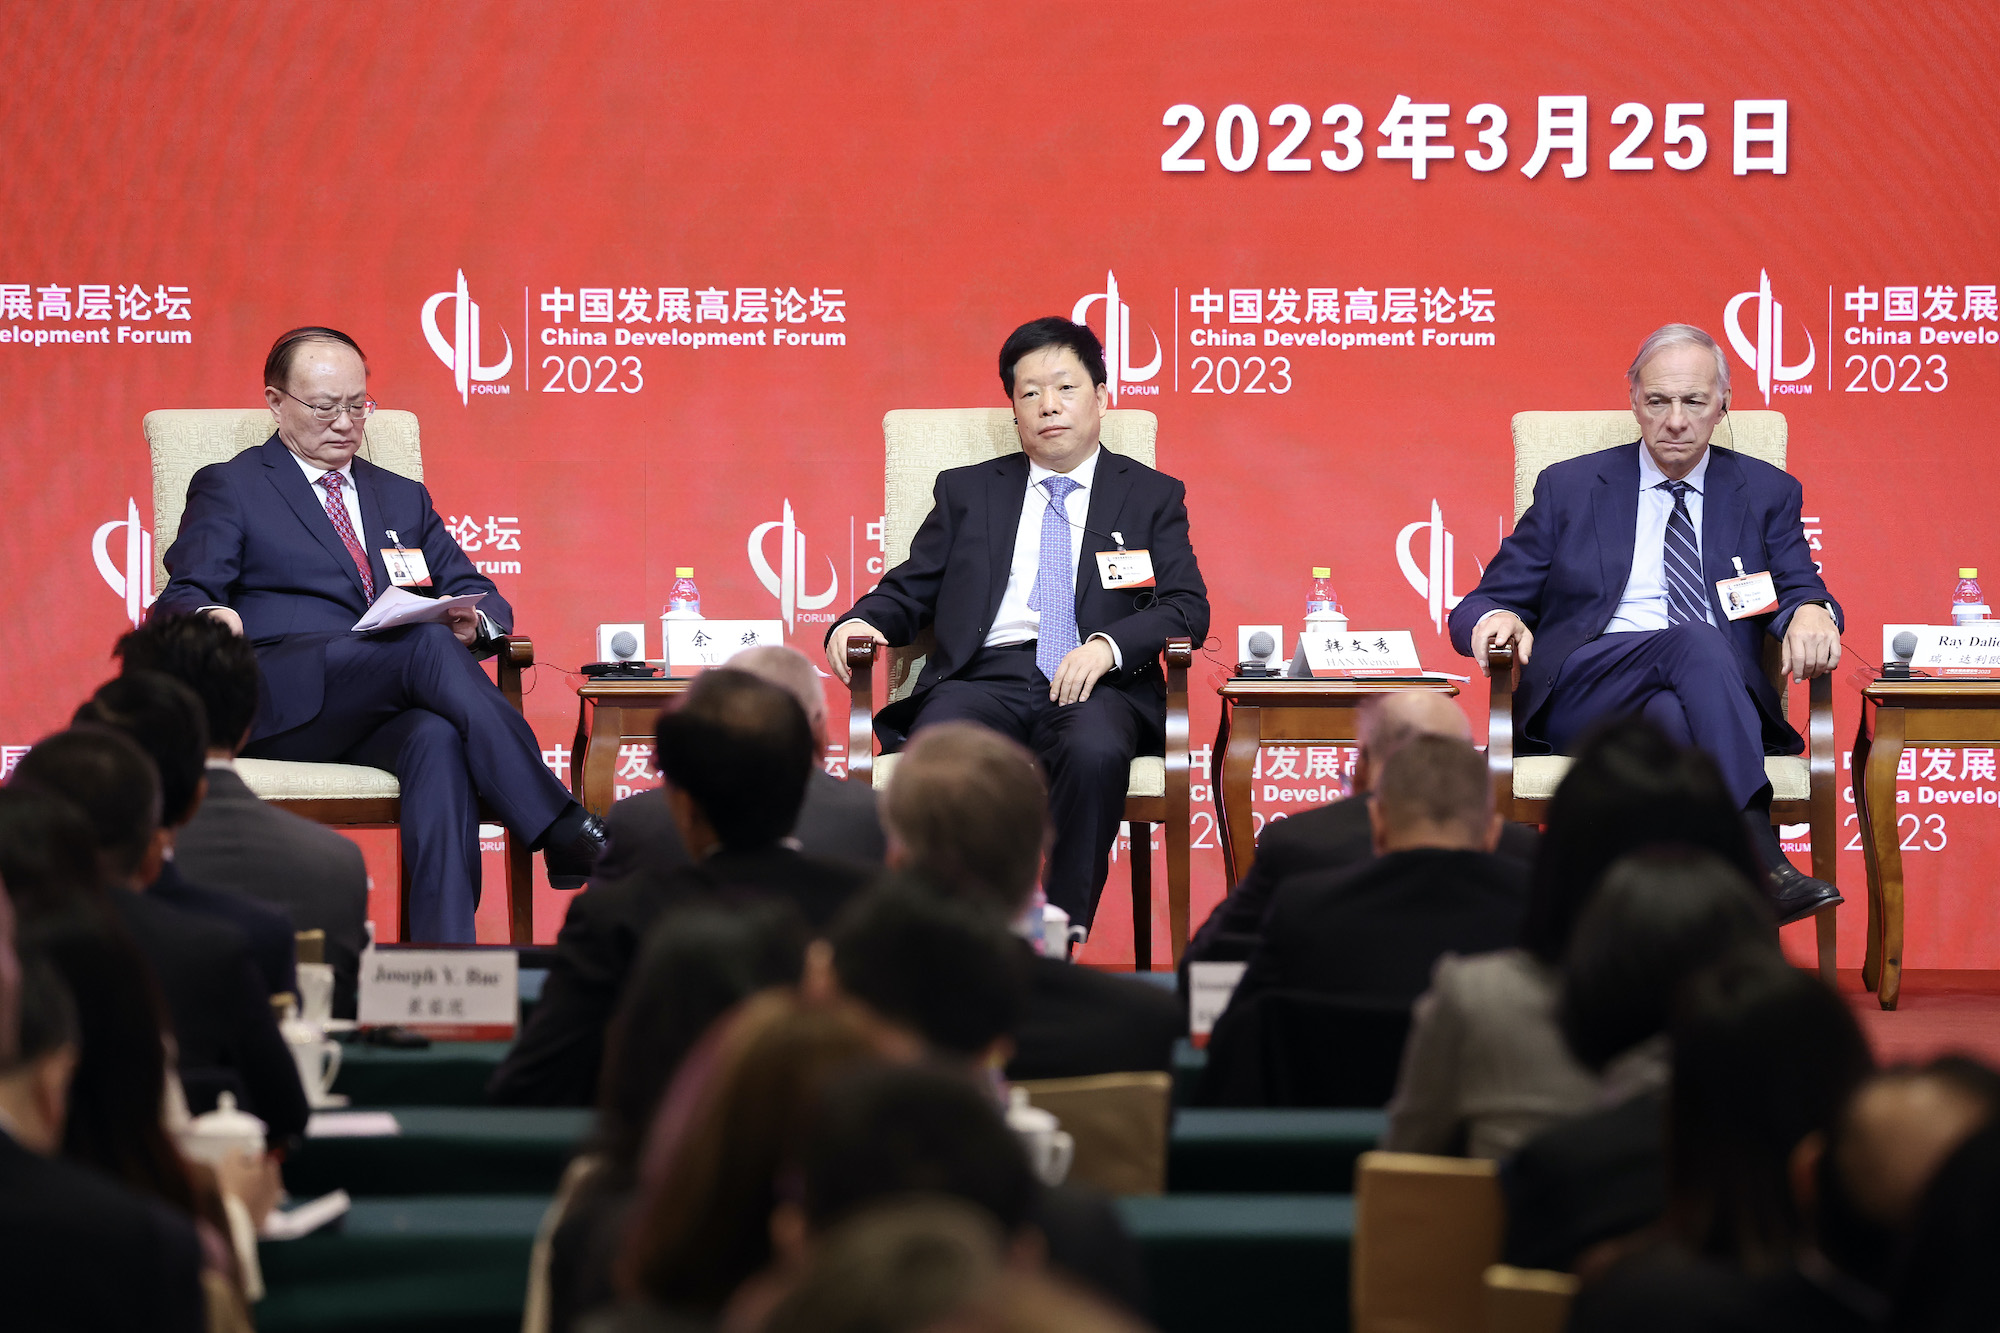 (Từ trái qua phải) ông Vu Bân (Yu Bin), Phó Chủ tịch Trung tâm Nghiên cứu Phát triển của Quốc vụ Viện, ông Hàn Văn Tú (Han Wenxiu), Phó Giám đốc Điều hành của Văn phòng Tổng cục Tài chính Trung ương, ông Ray Dalio, người sáng lập Bridgewater Associates LP, trong Diễn đàn Phát triển Trung Quốc 2023 tại Nhà khách Quốc gia Điếu Ngư Đài hôm 25/03/2023, tại Bắc Kinh, Trung Quốc. (Ảnh: Lintao Zhang/Getty Images)